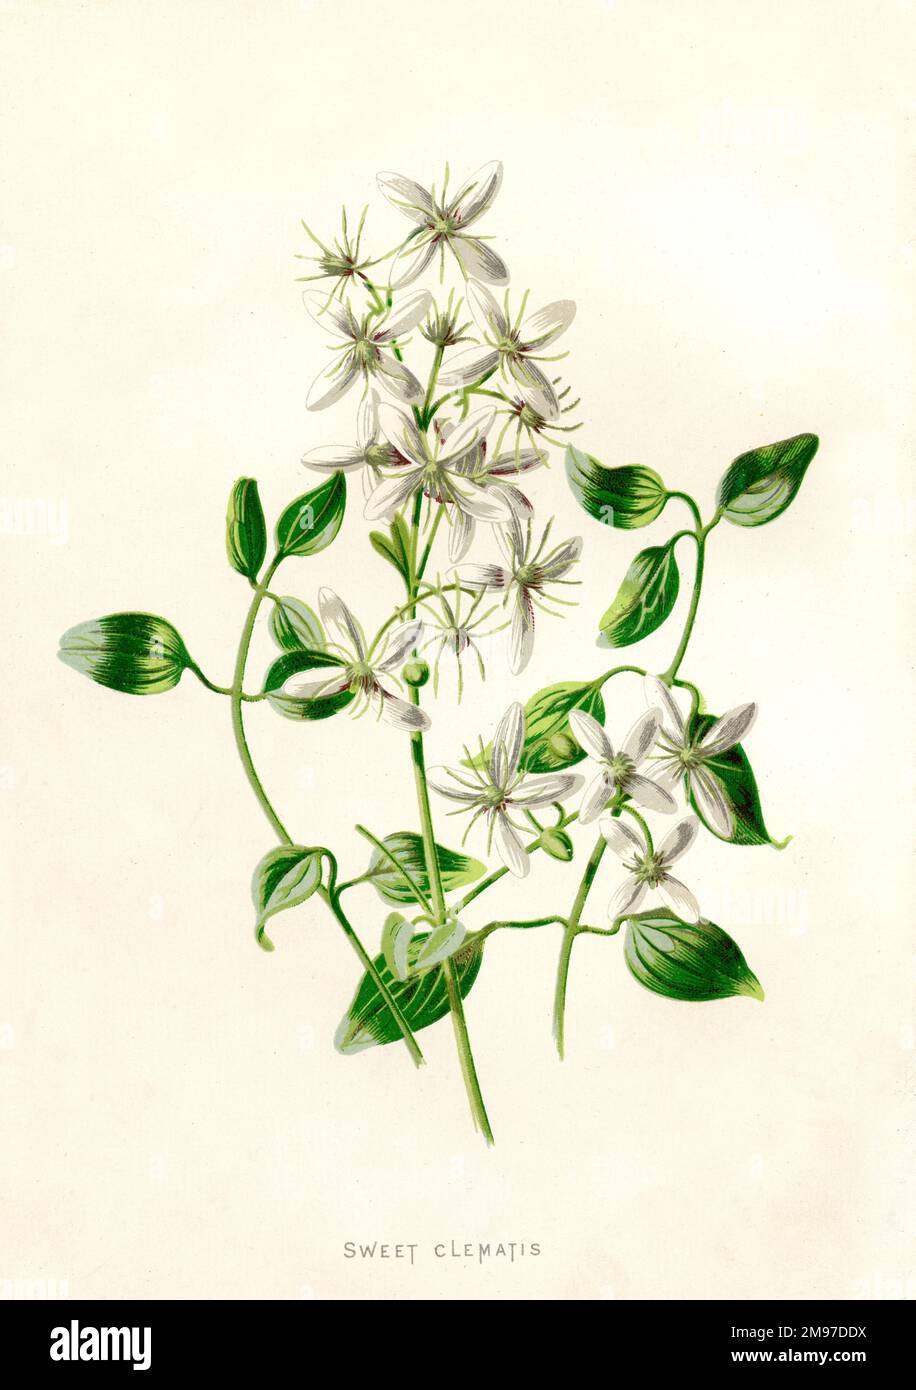 Wunderschöner botanischer Druck einer süßen Clematis-Pflanze Stockfoto